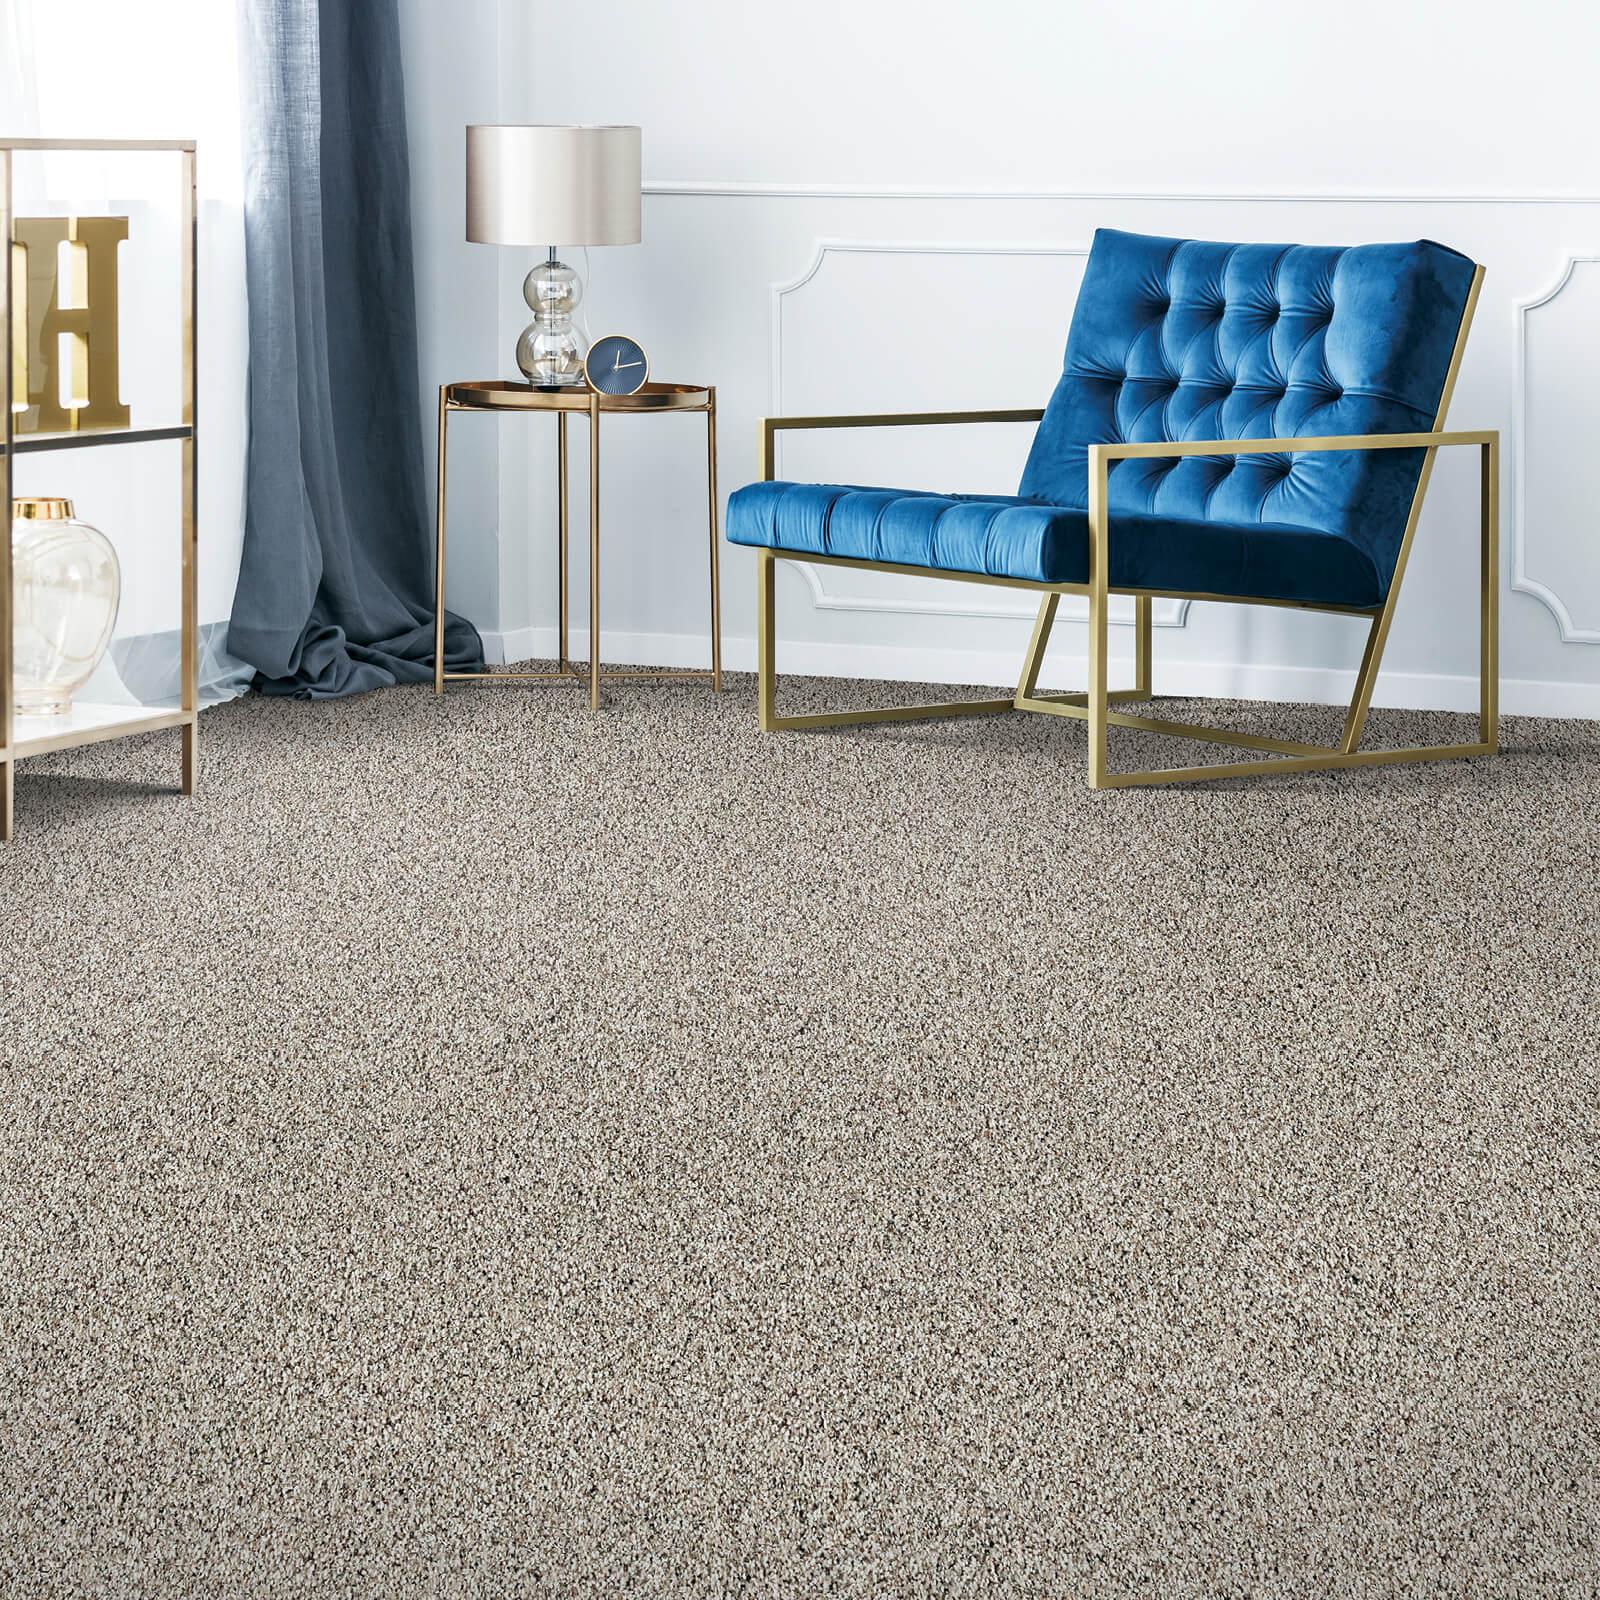 Grey carpet flooring | The L&L Company